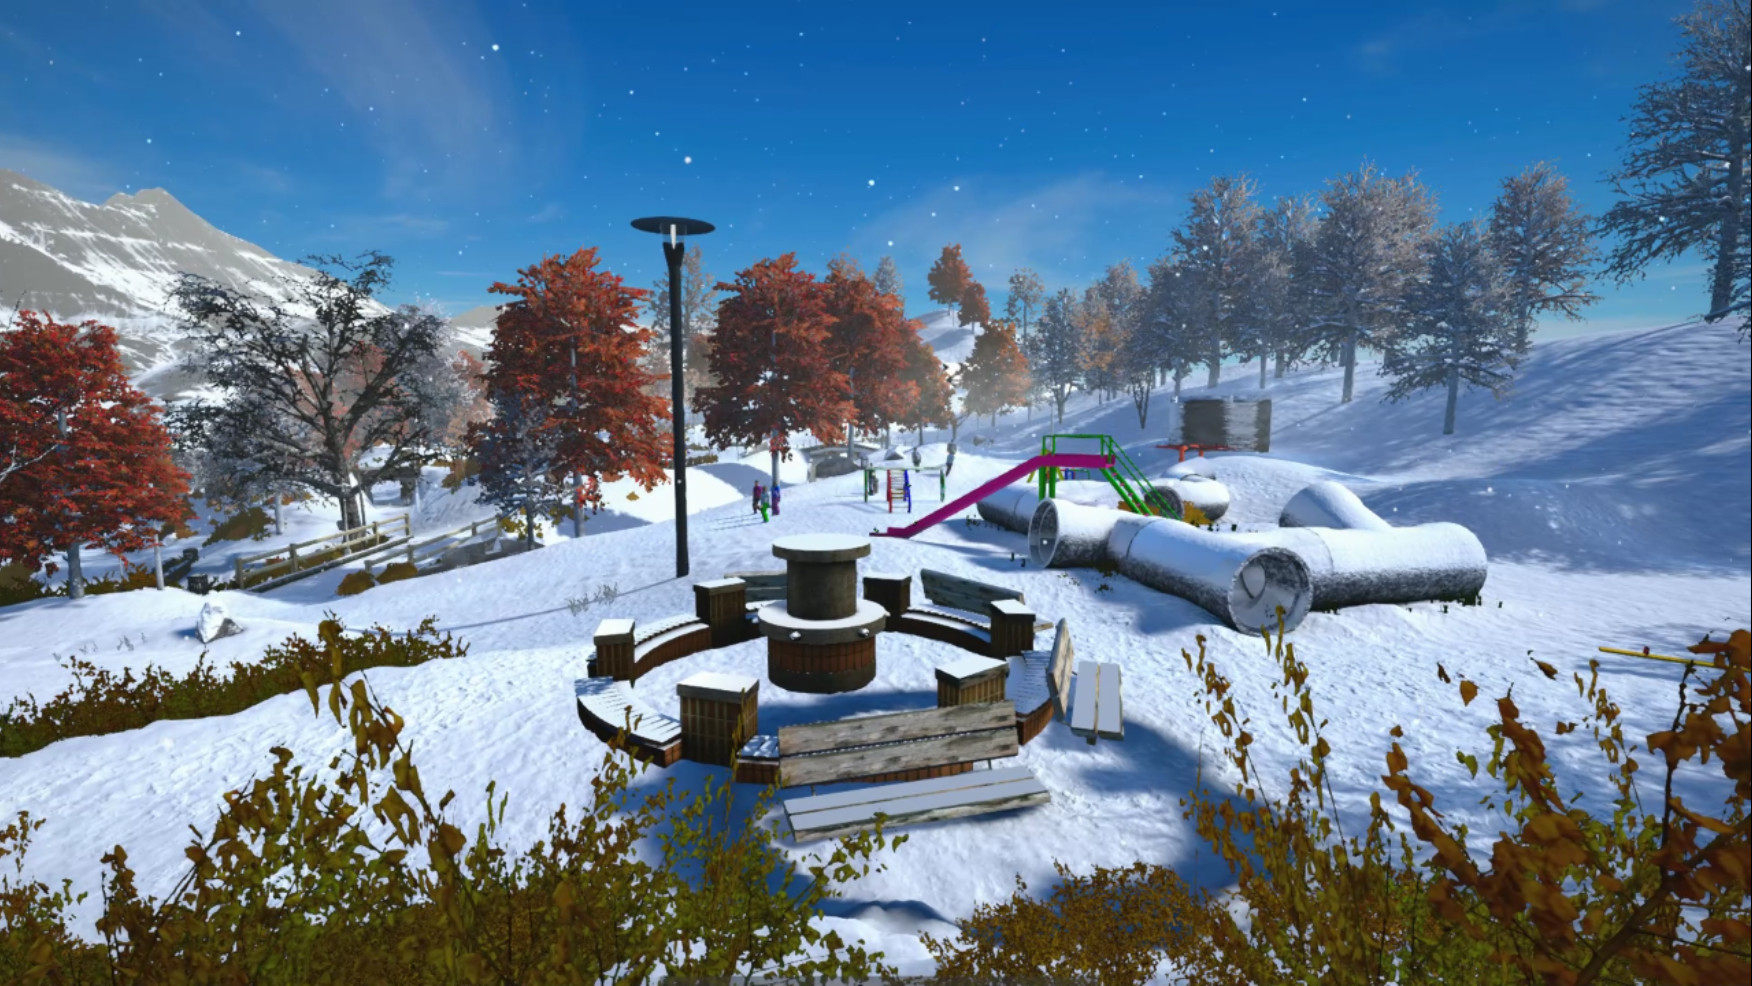 Snowballer screenshot